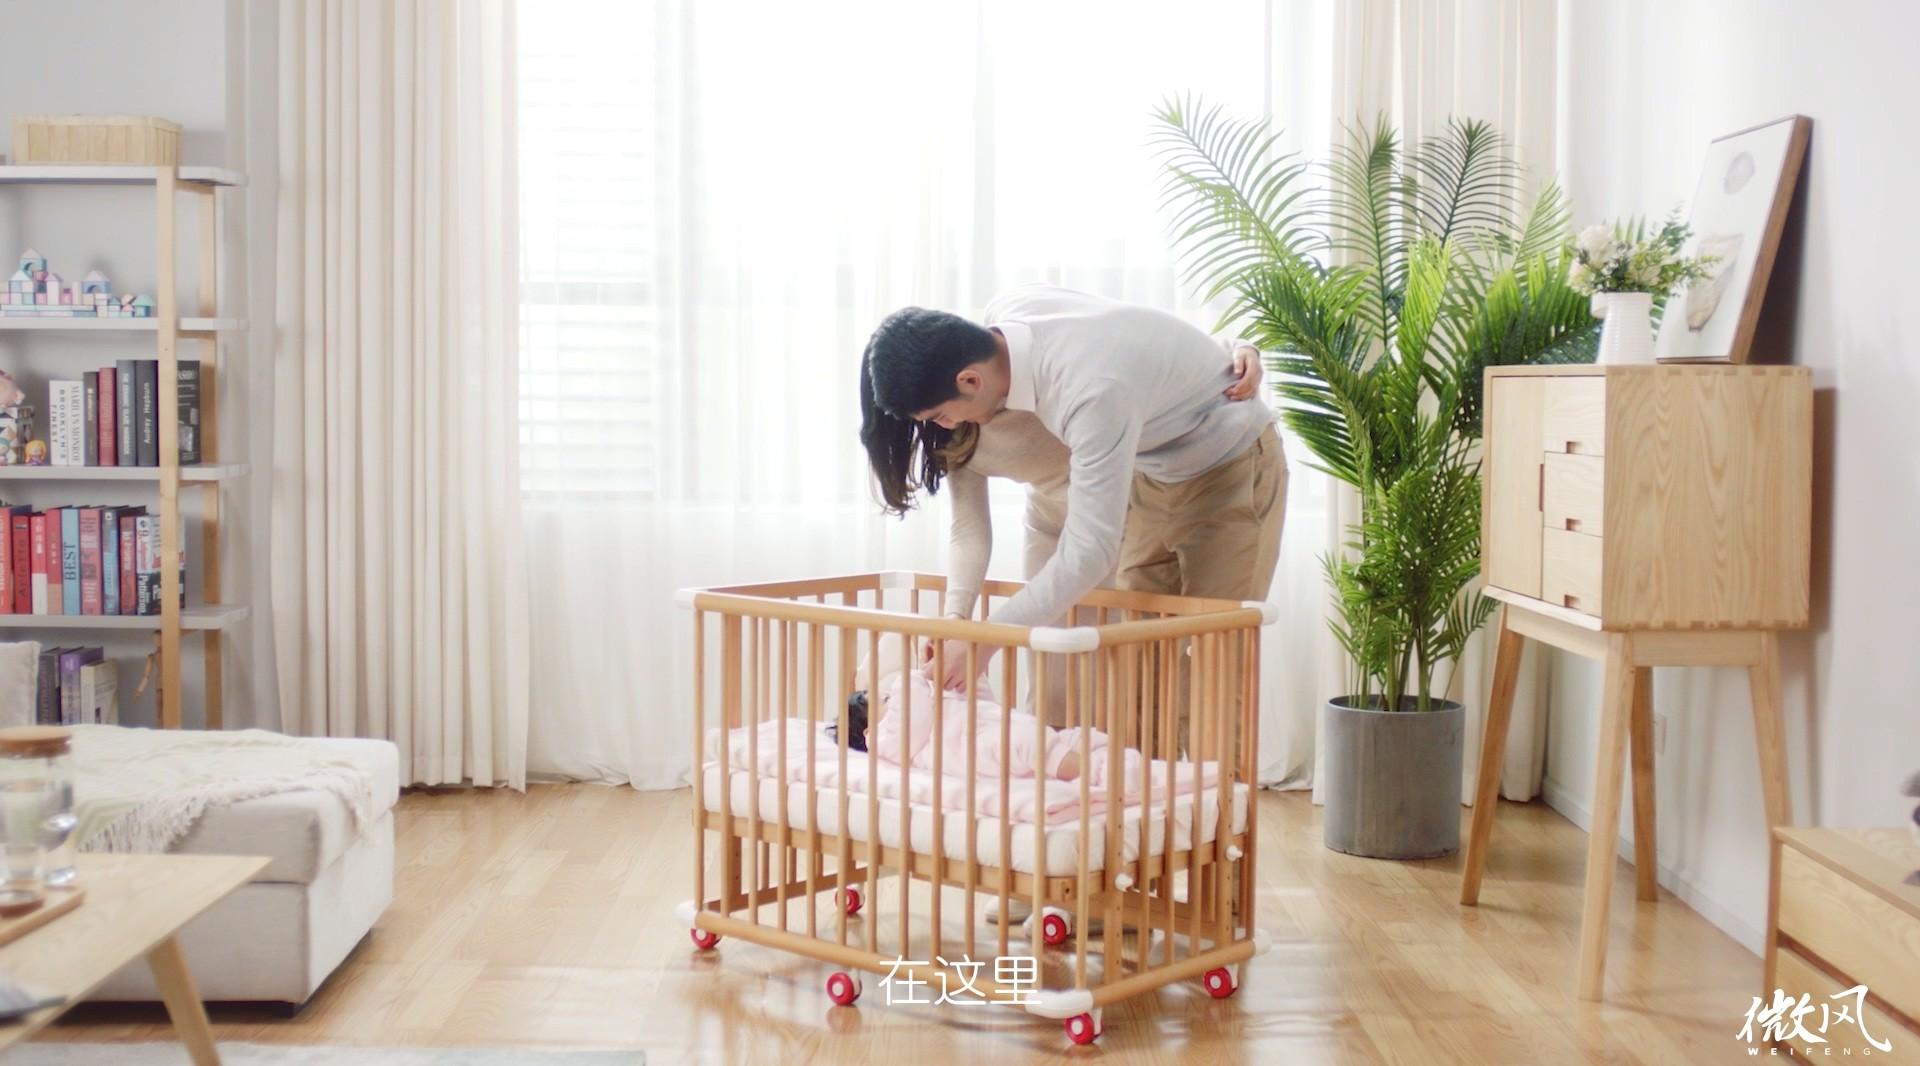 德蕴宝贝可拆装婴儿床淘宝头图视频——微风广告